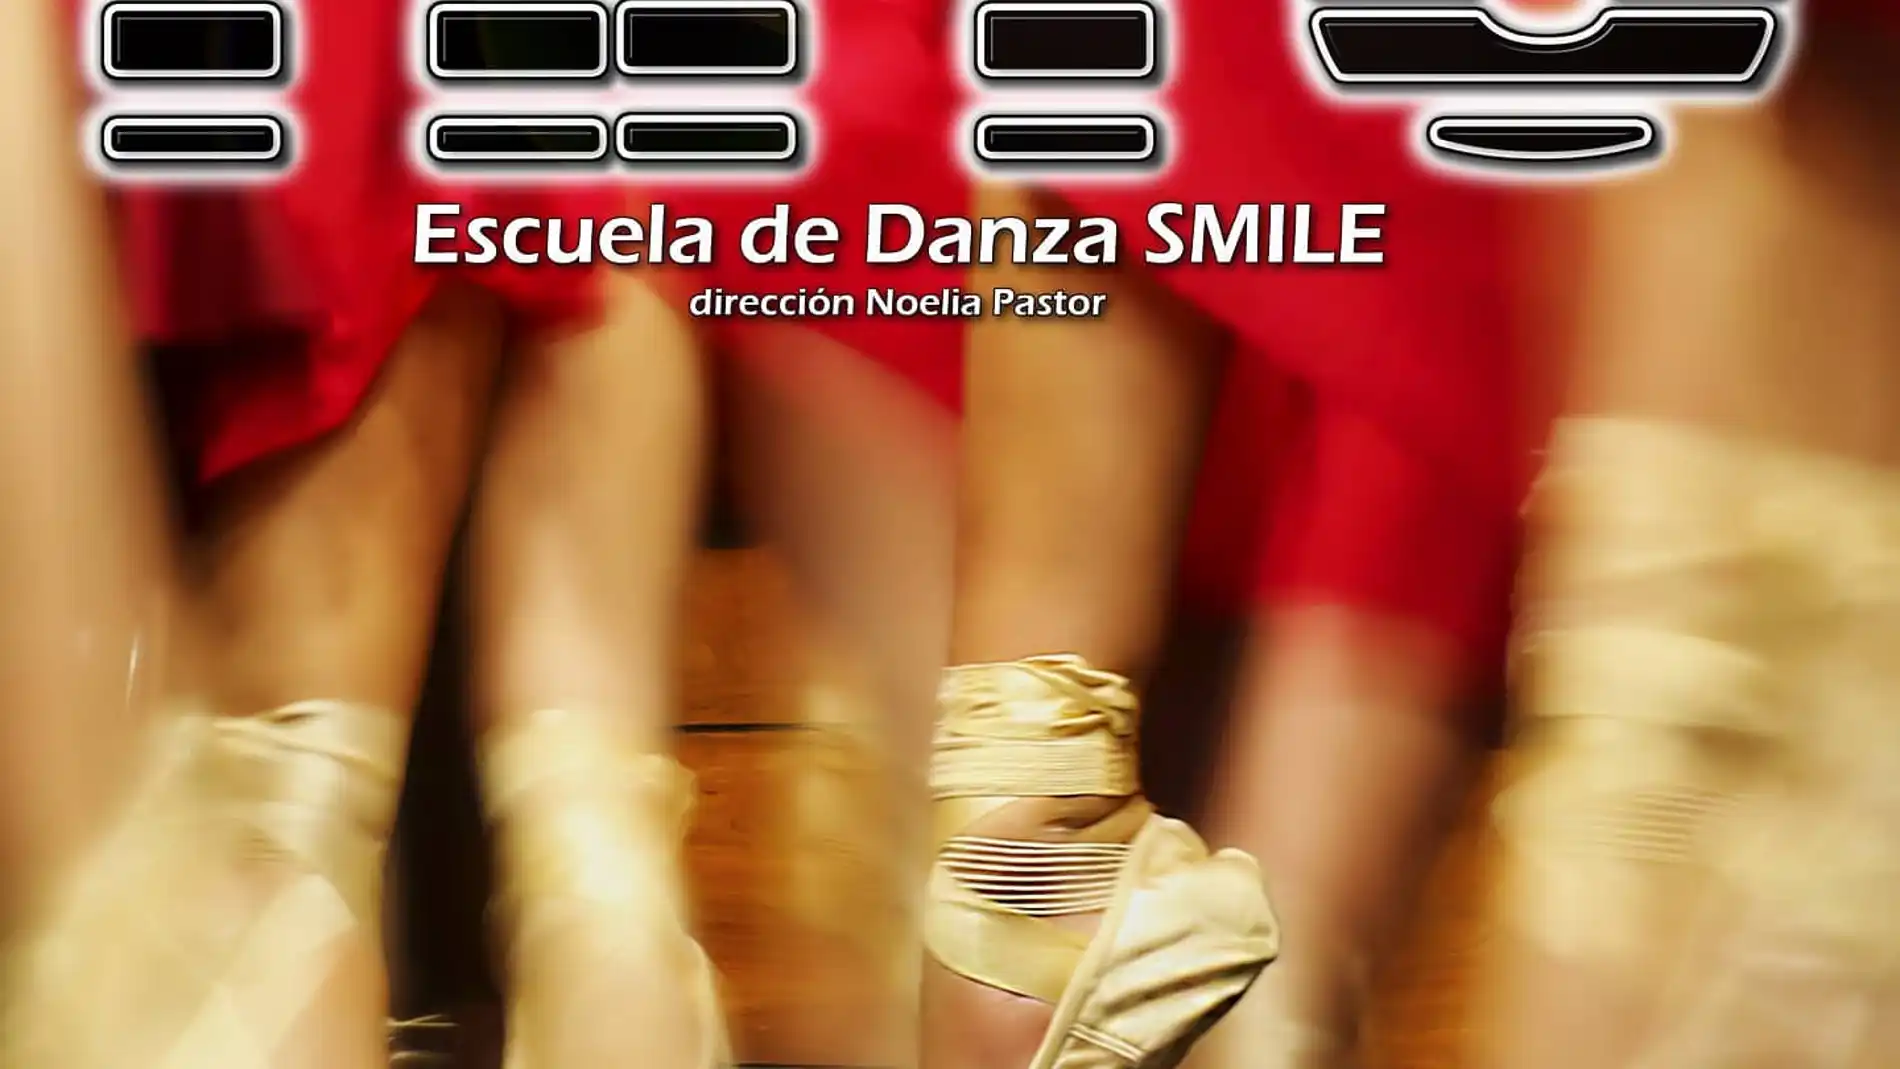 La Escuela de Danza Smile actúa en Villamuriel y Palencia